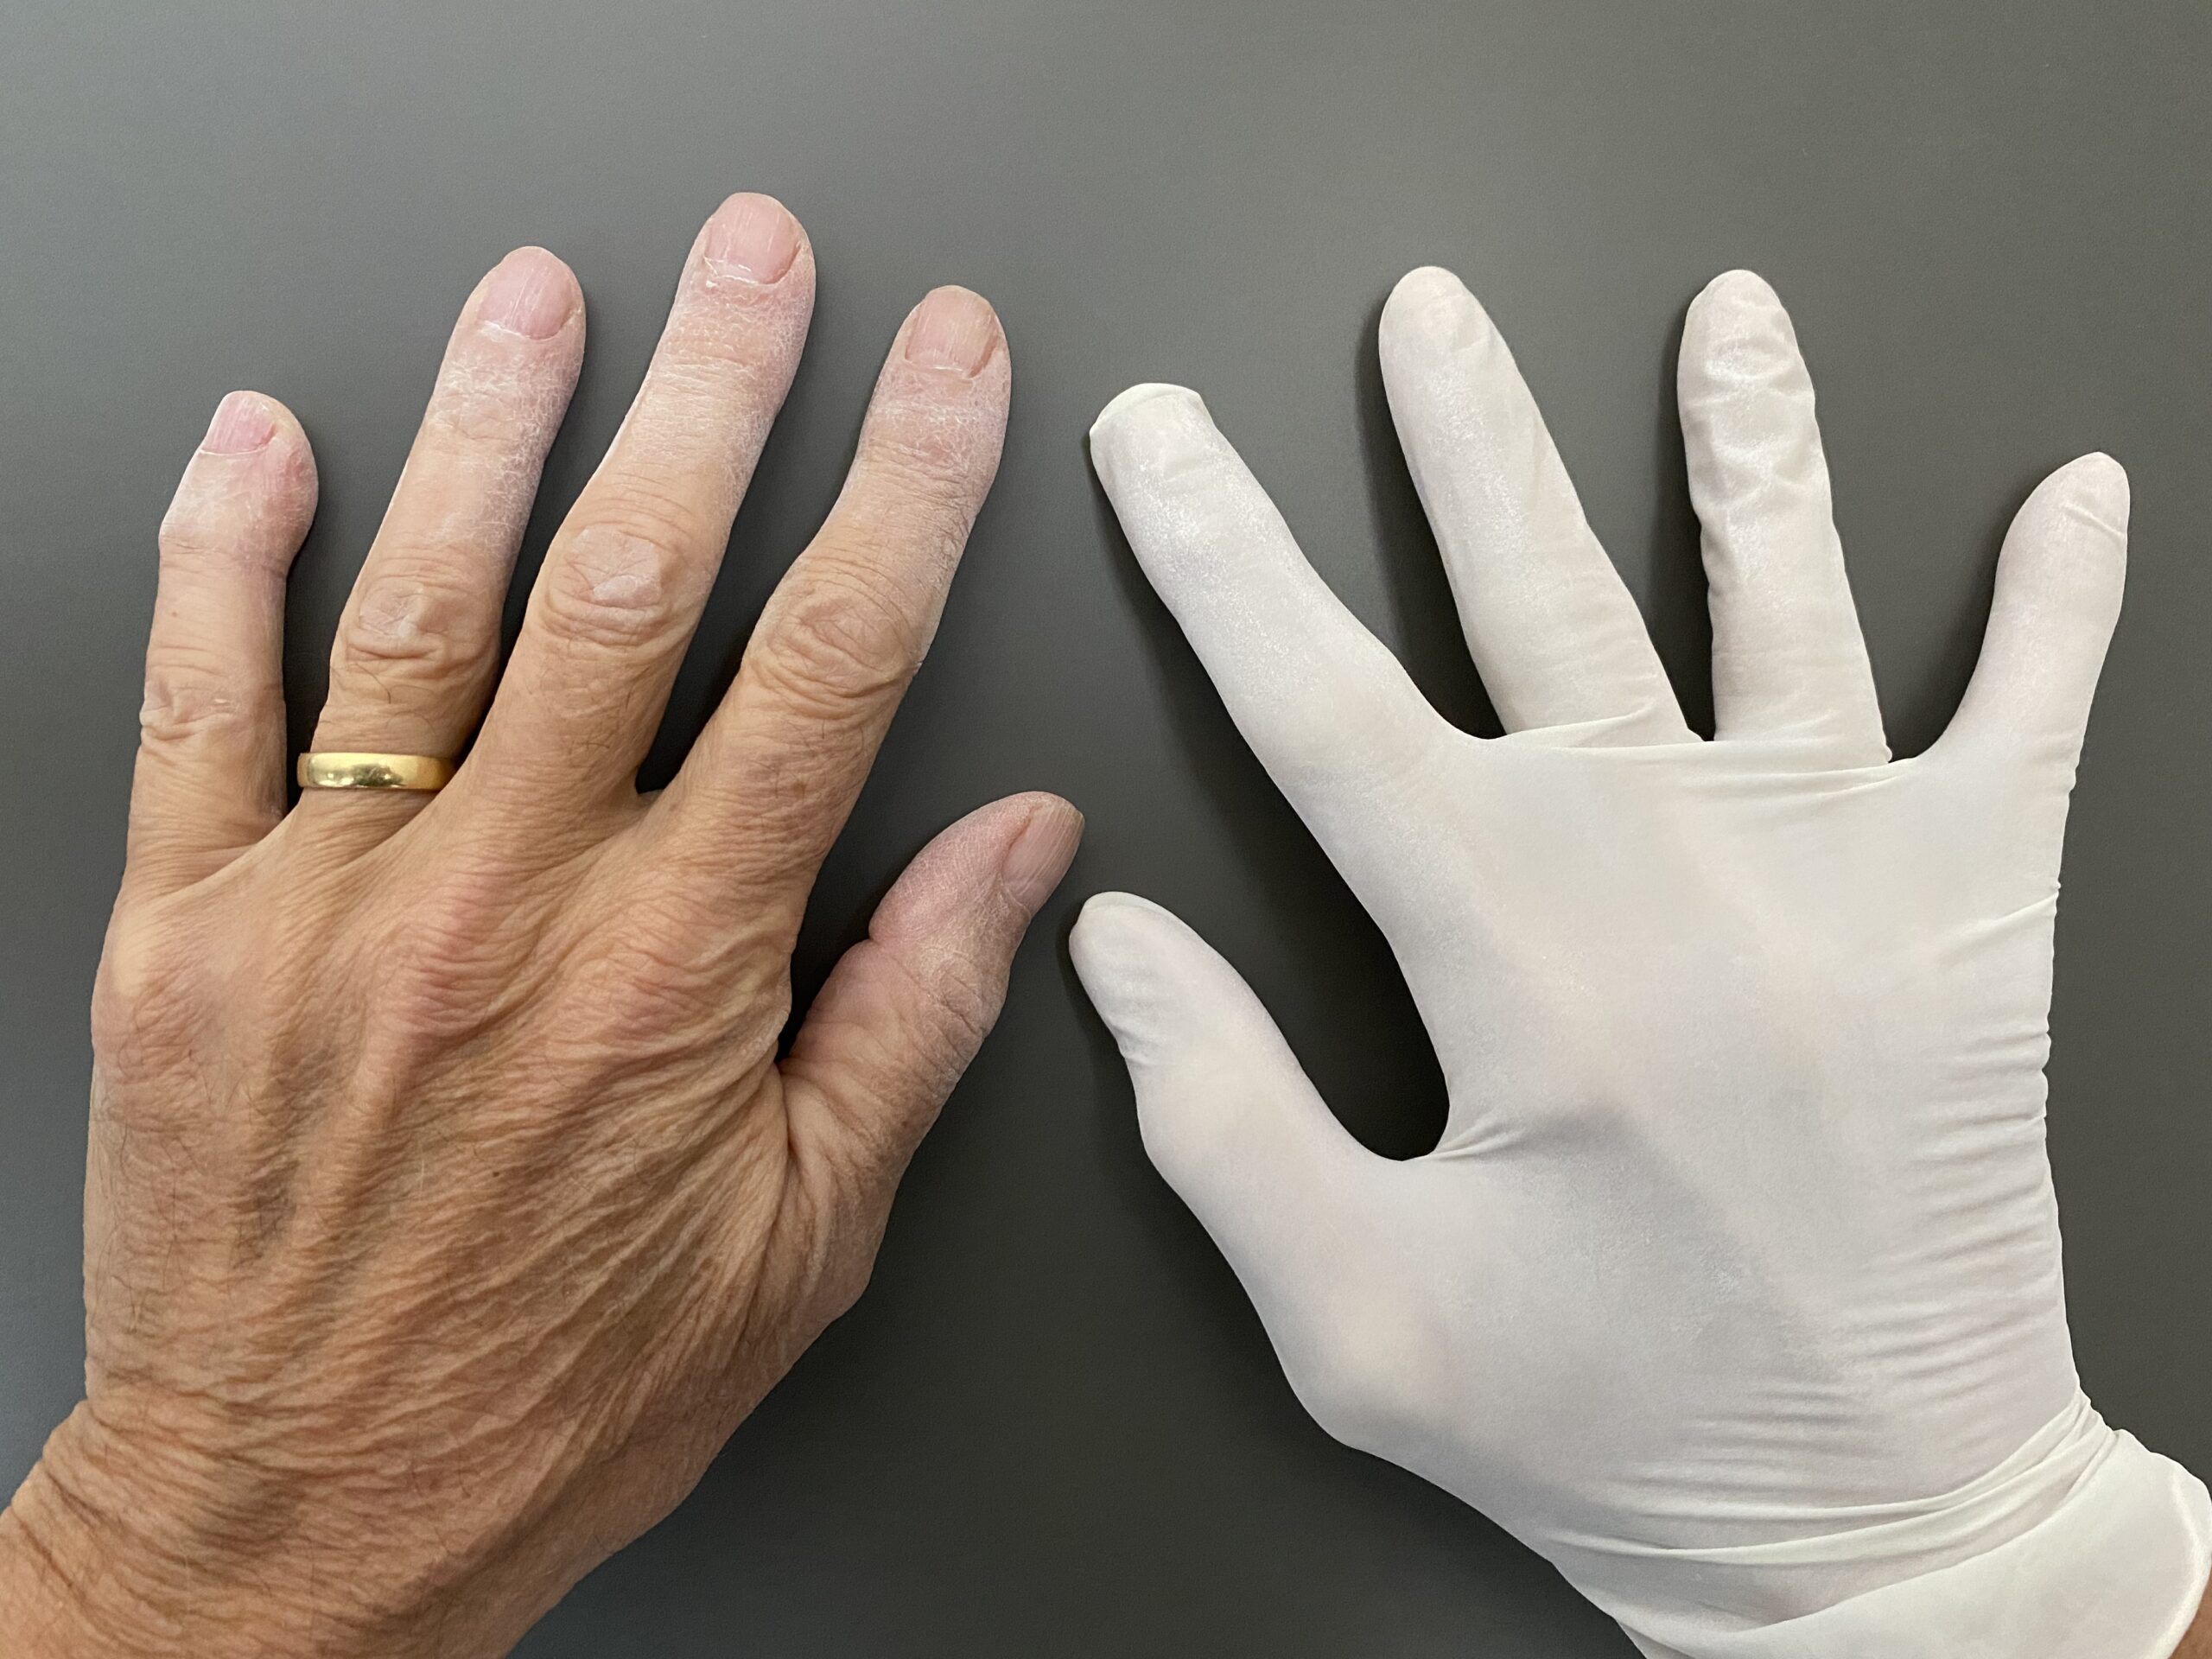 Des gants pour travailler, parce que les mains de vos salariés